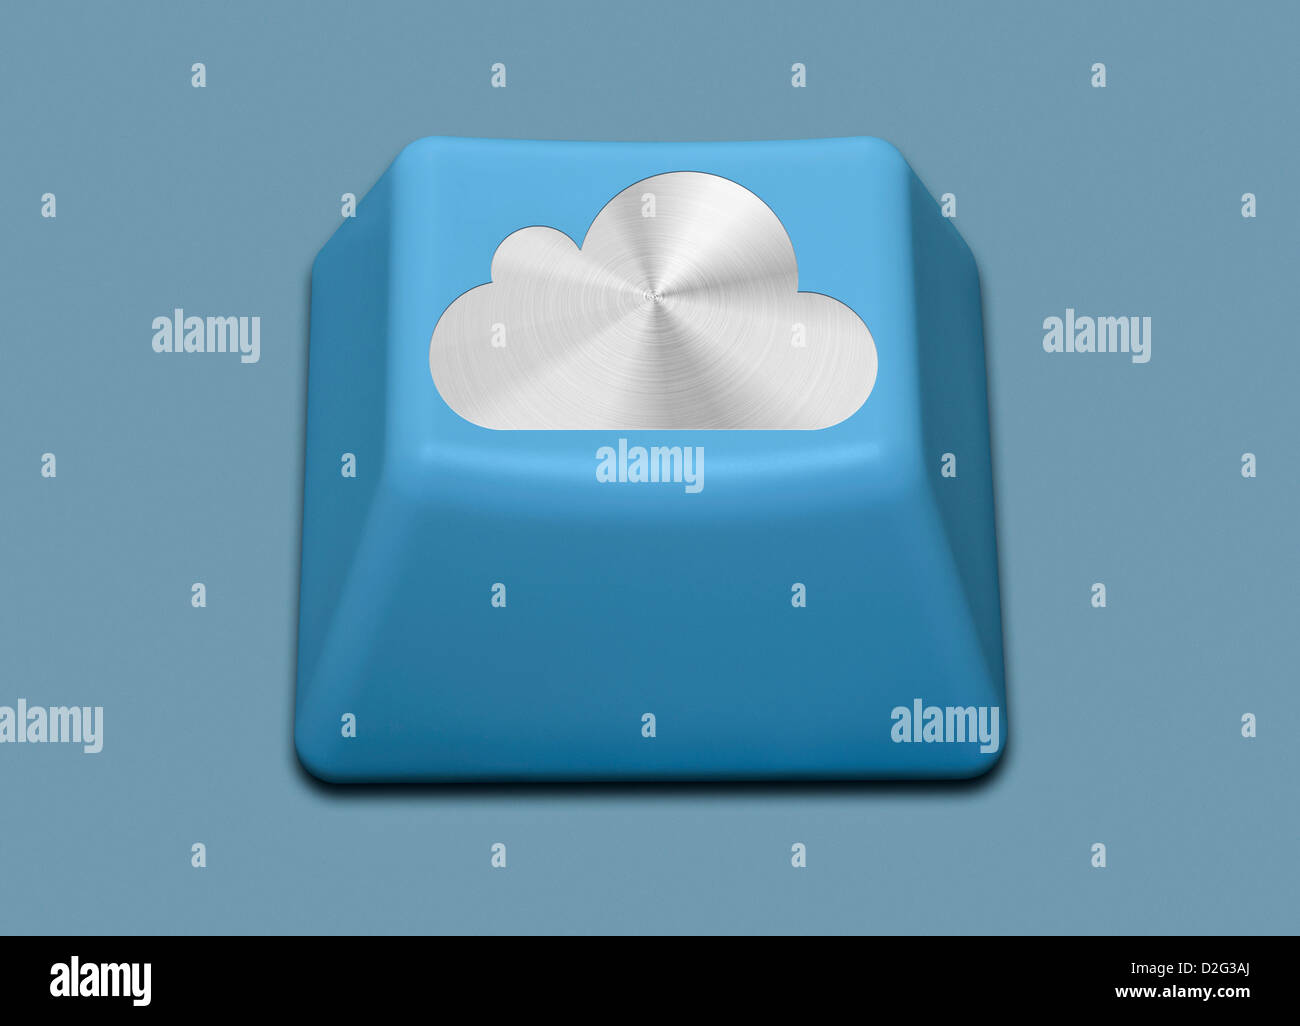 El equipo aislado clave con logotipo de iCloud - el concepto de cloud computing Foto de stock